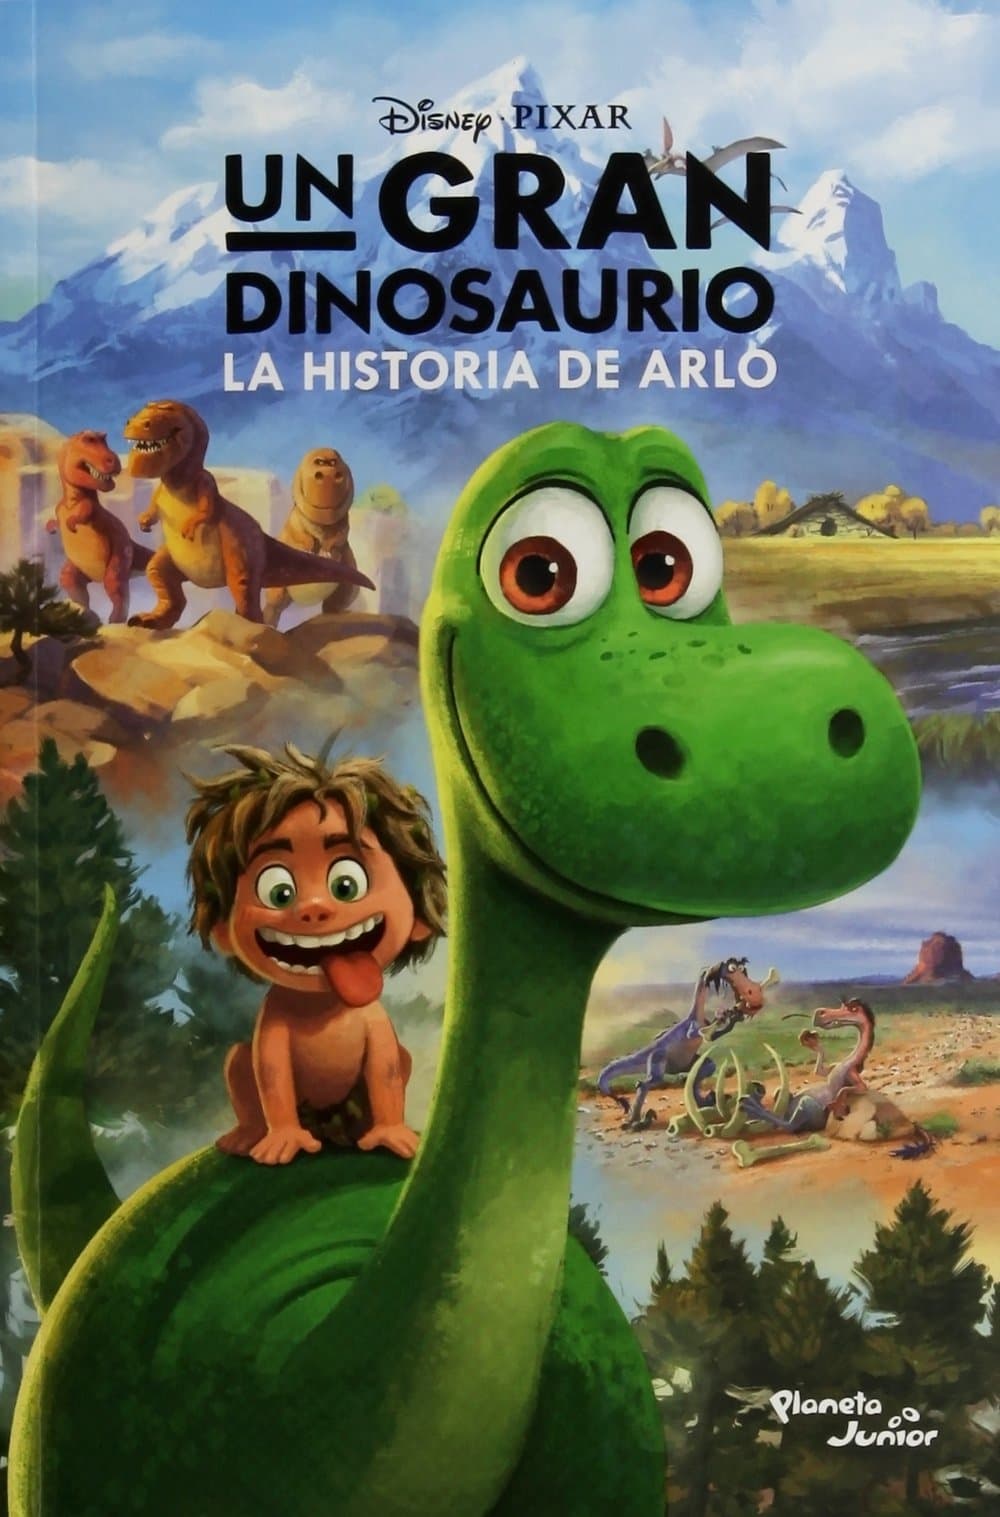 Un gran dinosaurio (2015) - Posters — The Movie Database (TMDB)